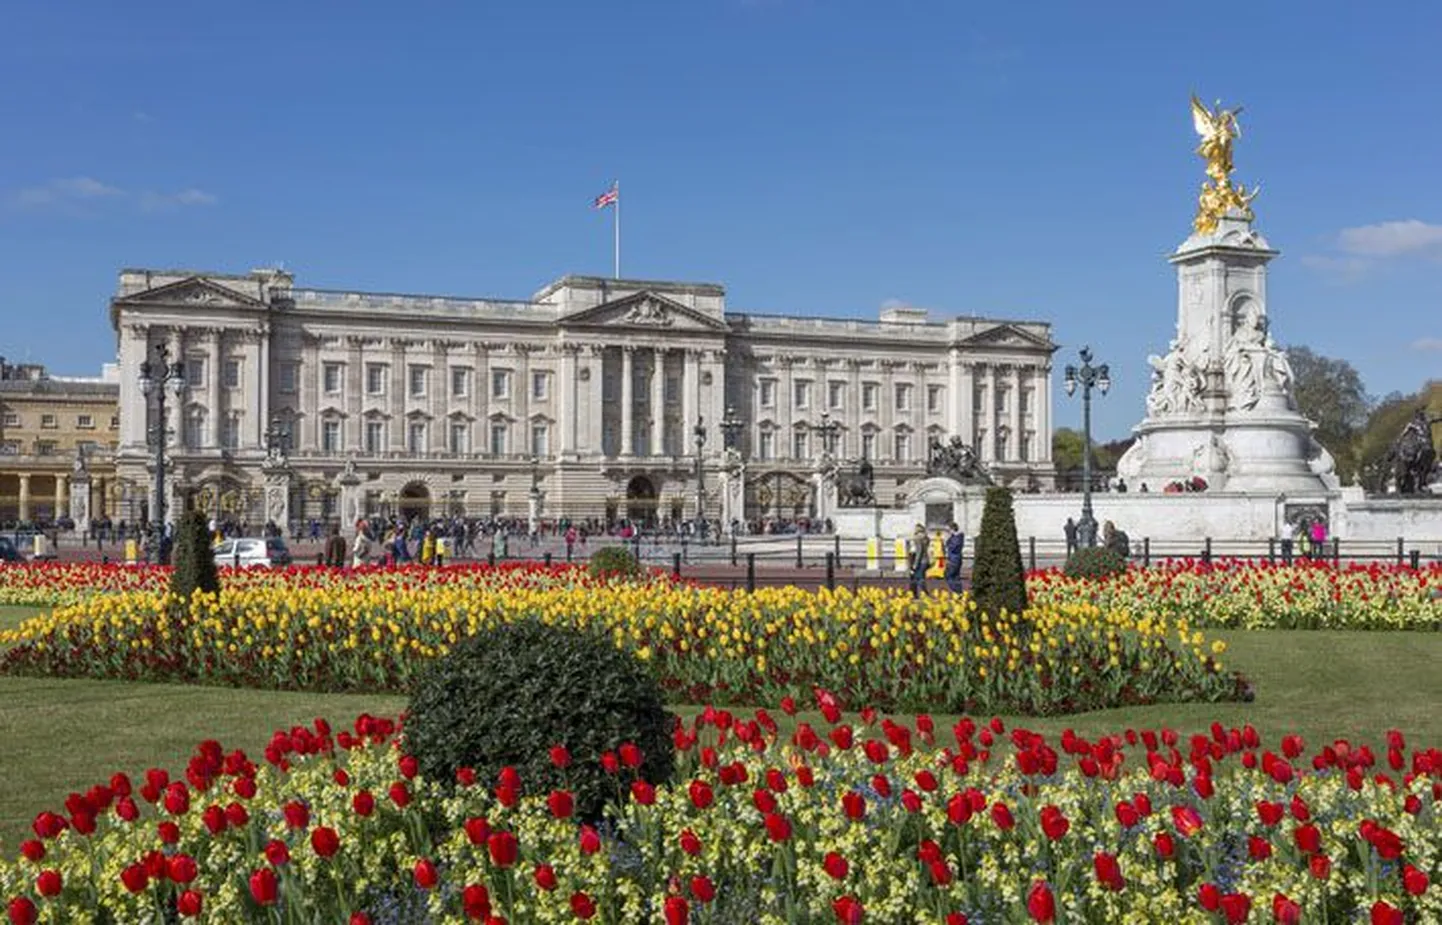 Londonis käies ei saa üle ega ümber Buckinghami paleest, mida turistihordidest piiratuna küll vaid eemalt vaadata õnnestub.